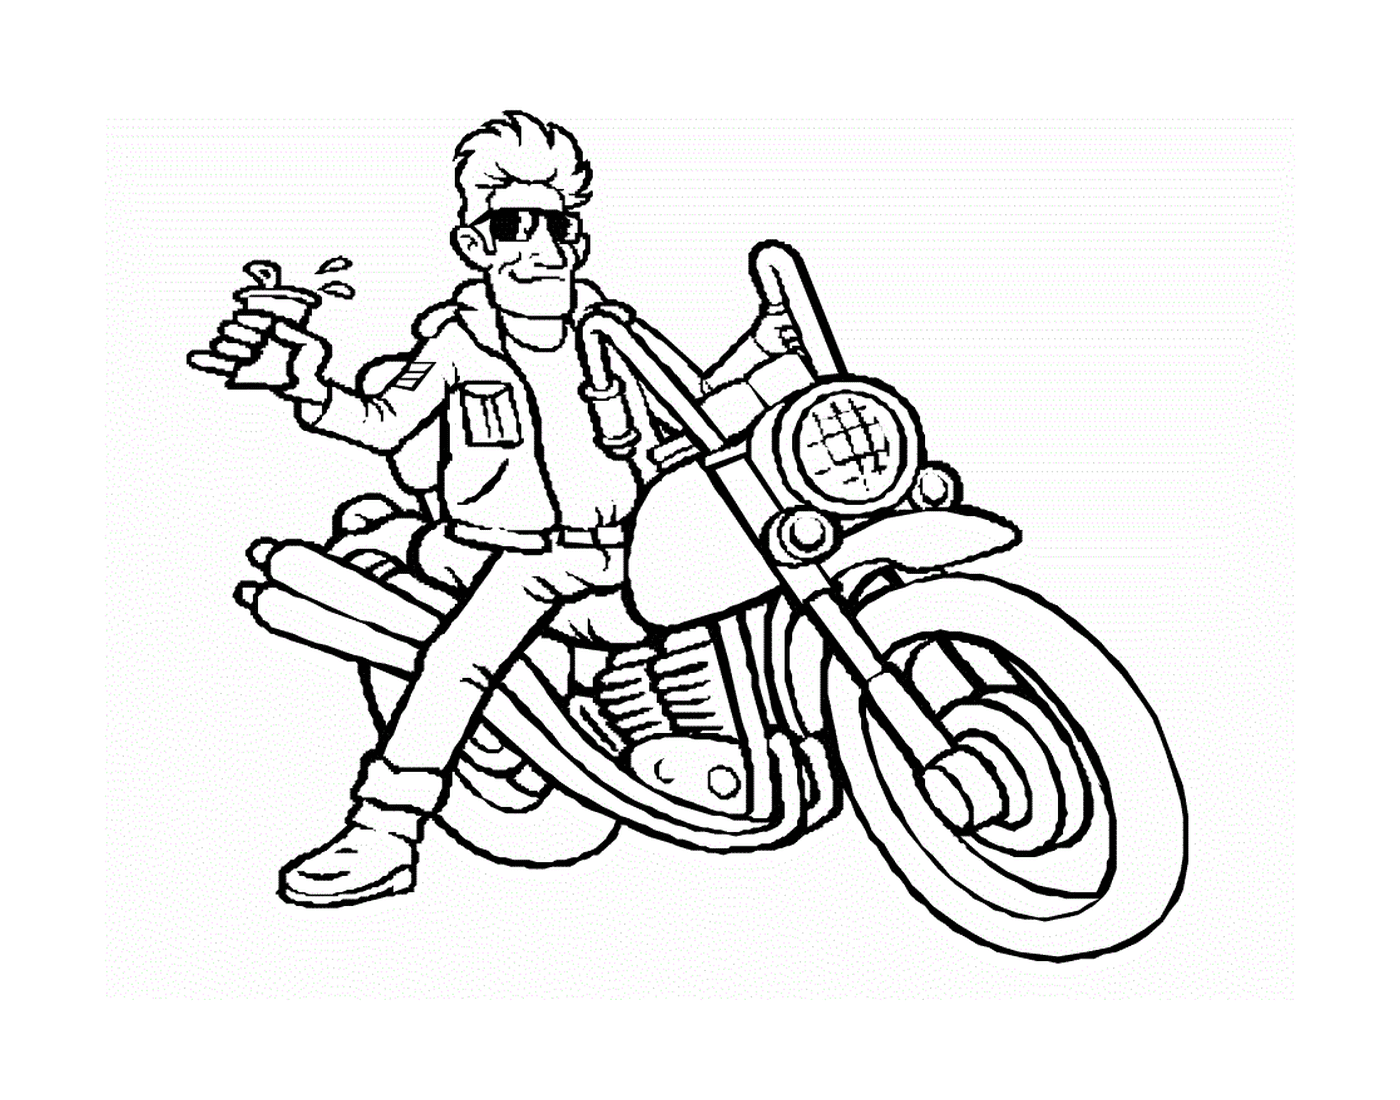  man sitting on motorcycle 